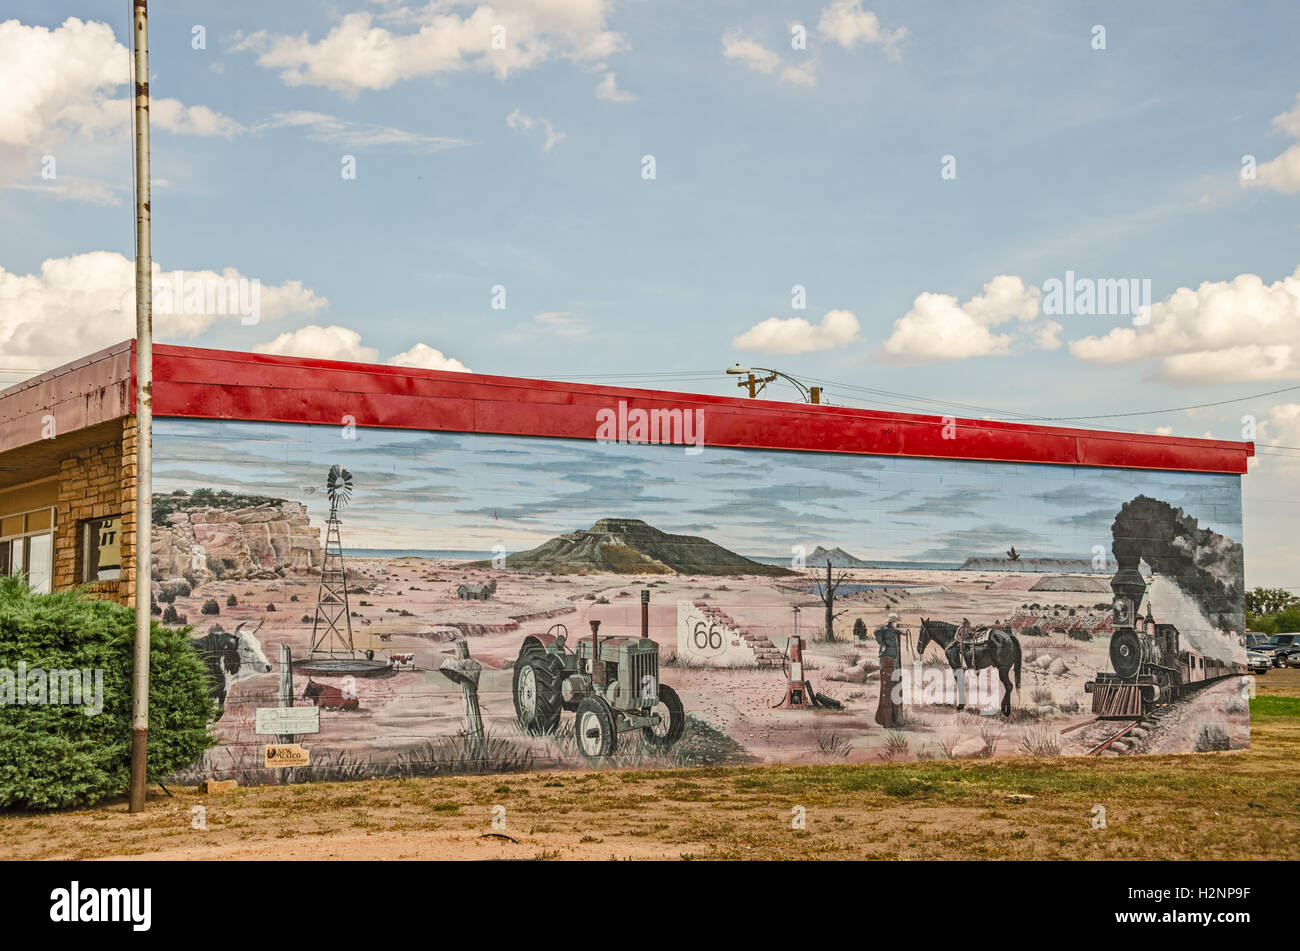 TUCUMCARI, NEW MEXICO - 25 août 2013 : Photo d'une peinture murale représentant la Route 66 dans le pays de l'enchantement Banque D'Images